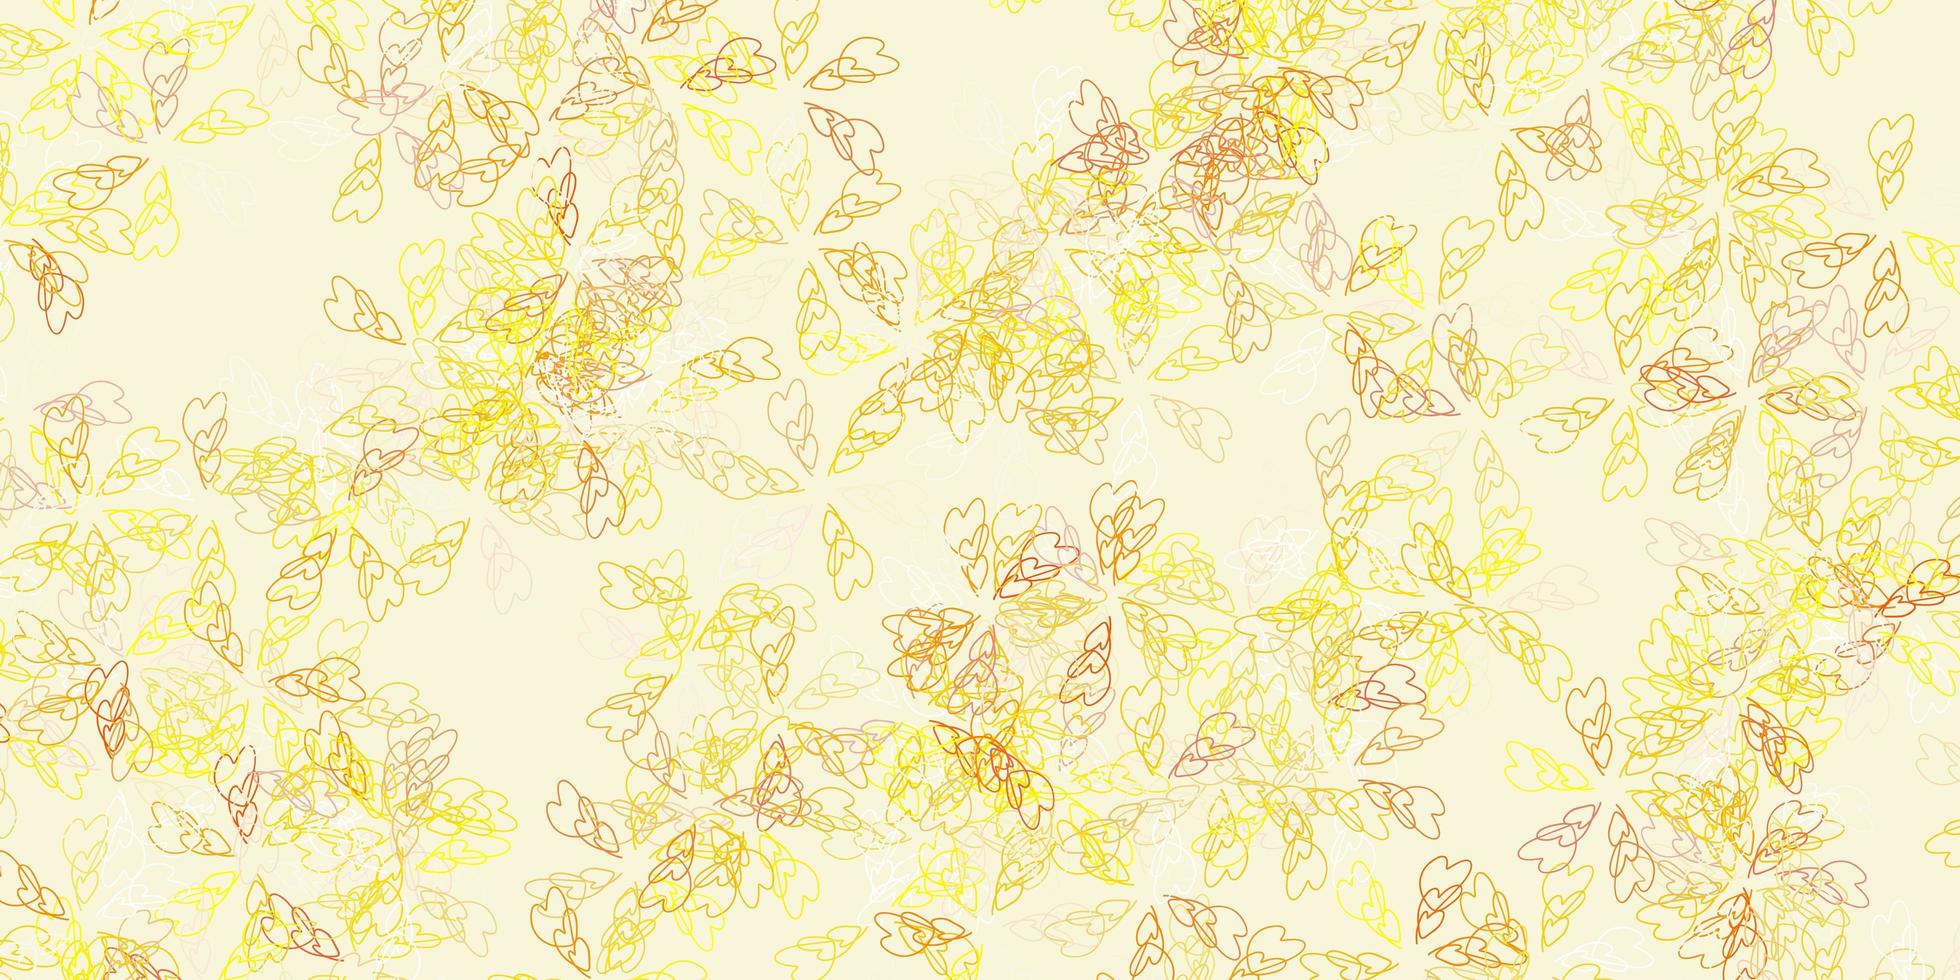 motif abstrait de vecteur jaune clair avec des feuilles.